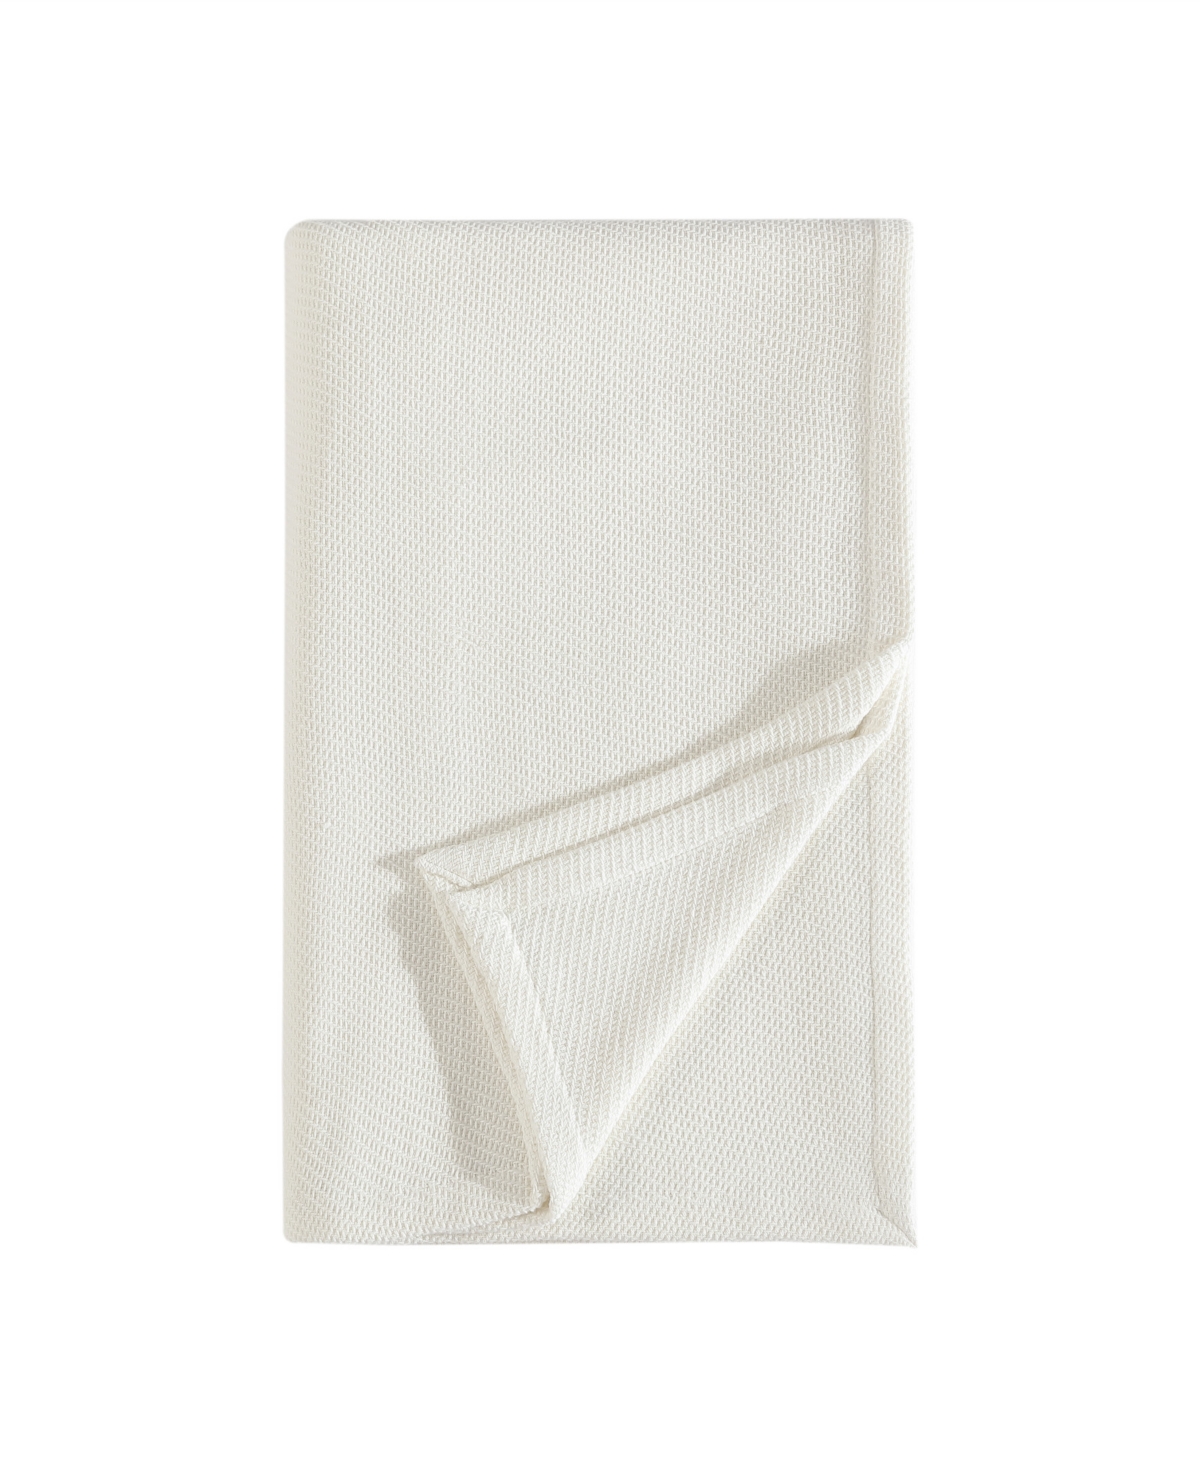 Eddie Bauer Textured Twill Solid Blanket, Full/queen In White